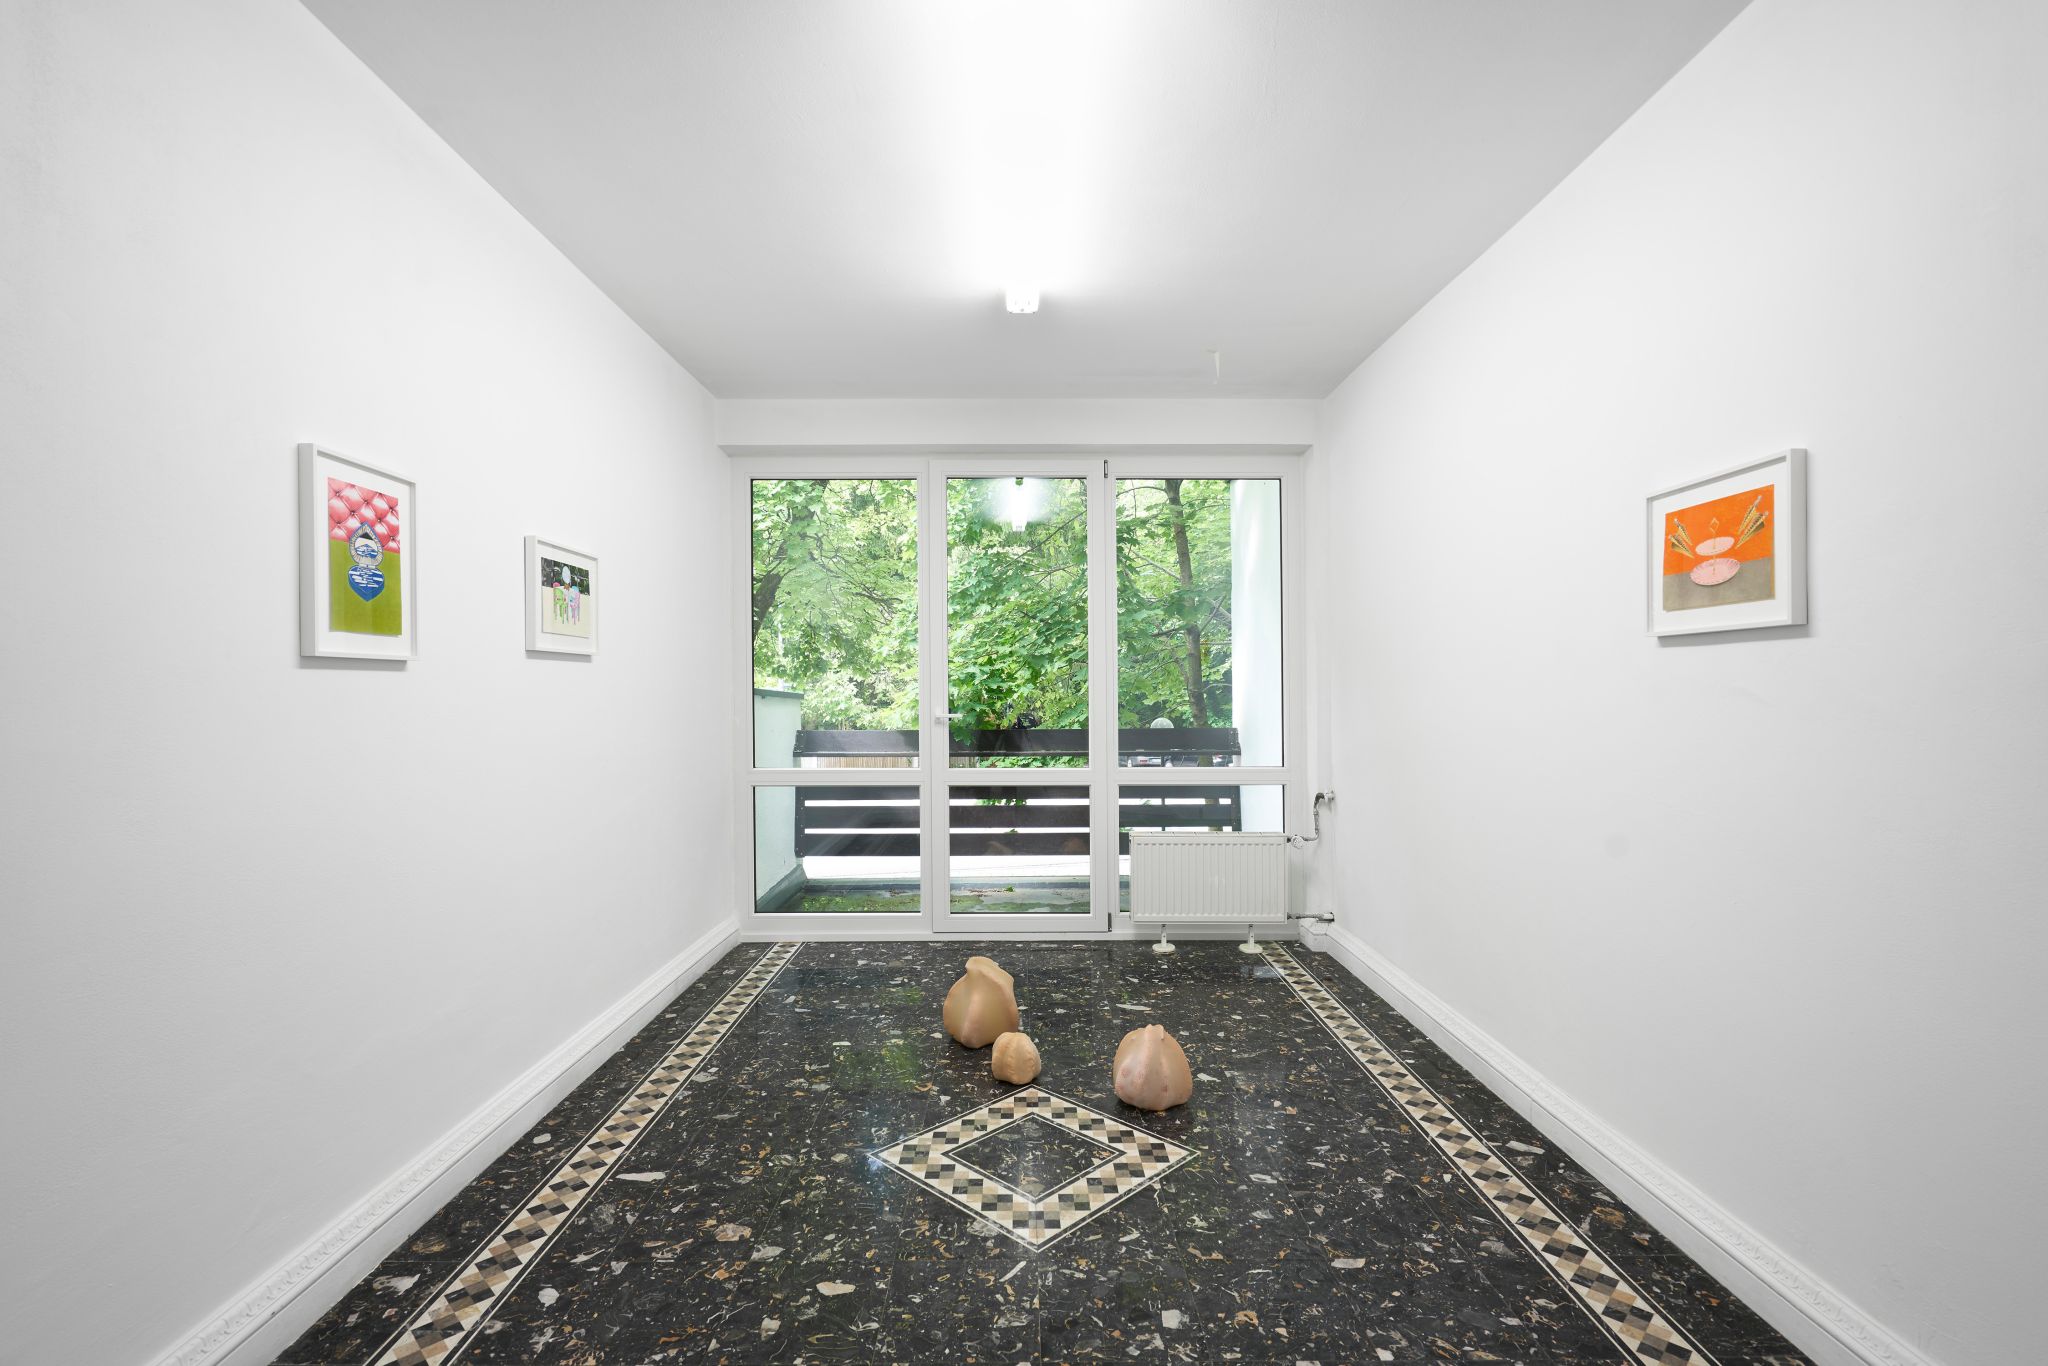 Installation view, Marta Riniker-Radich, Hanna-Maria Hammari